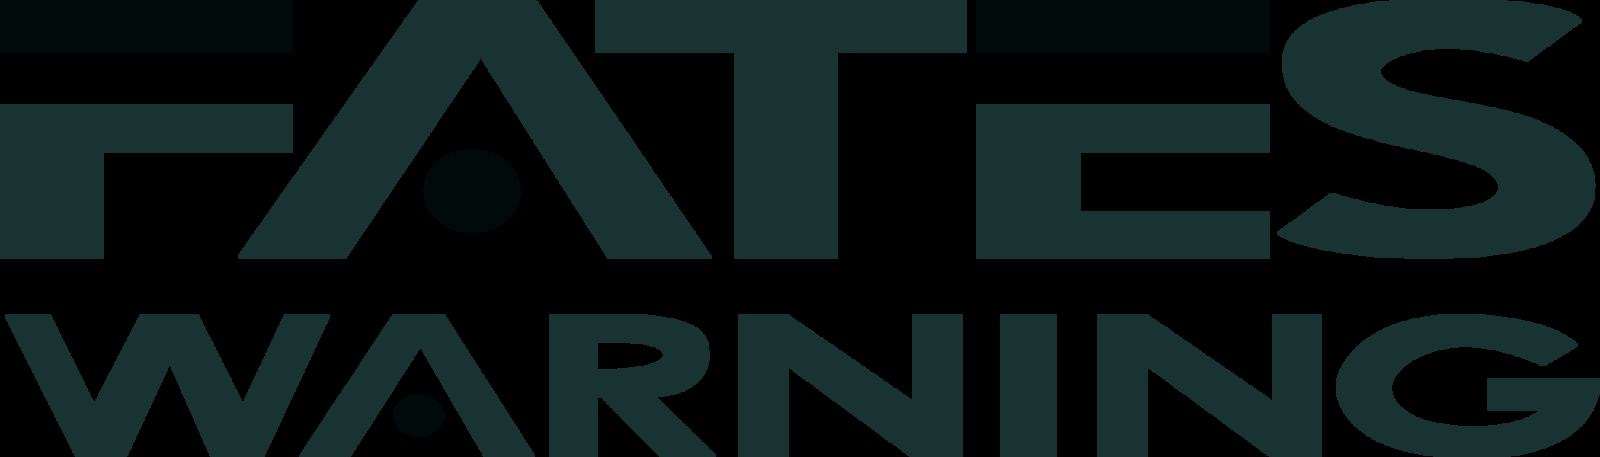 Fates Warning Logo 2000 by darkexecutor on